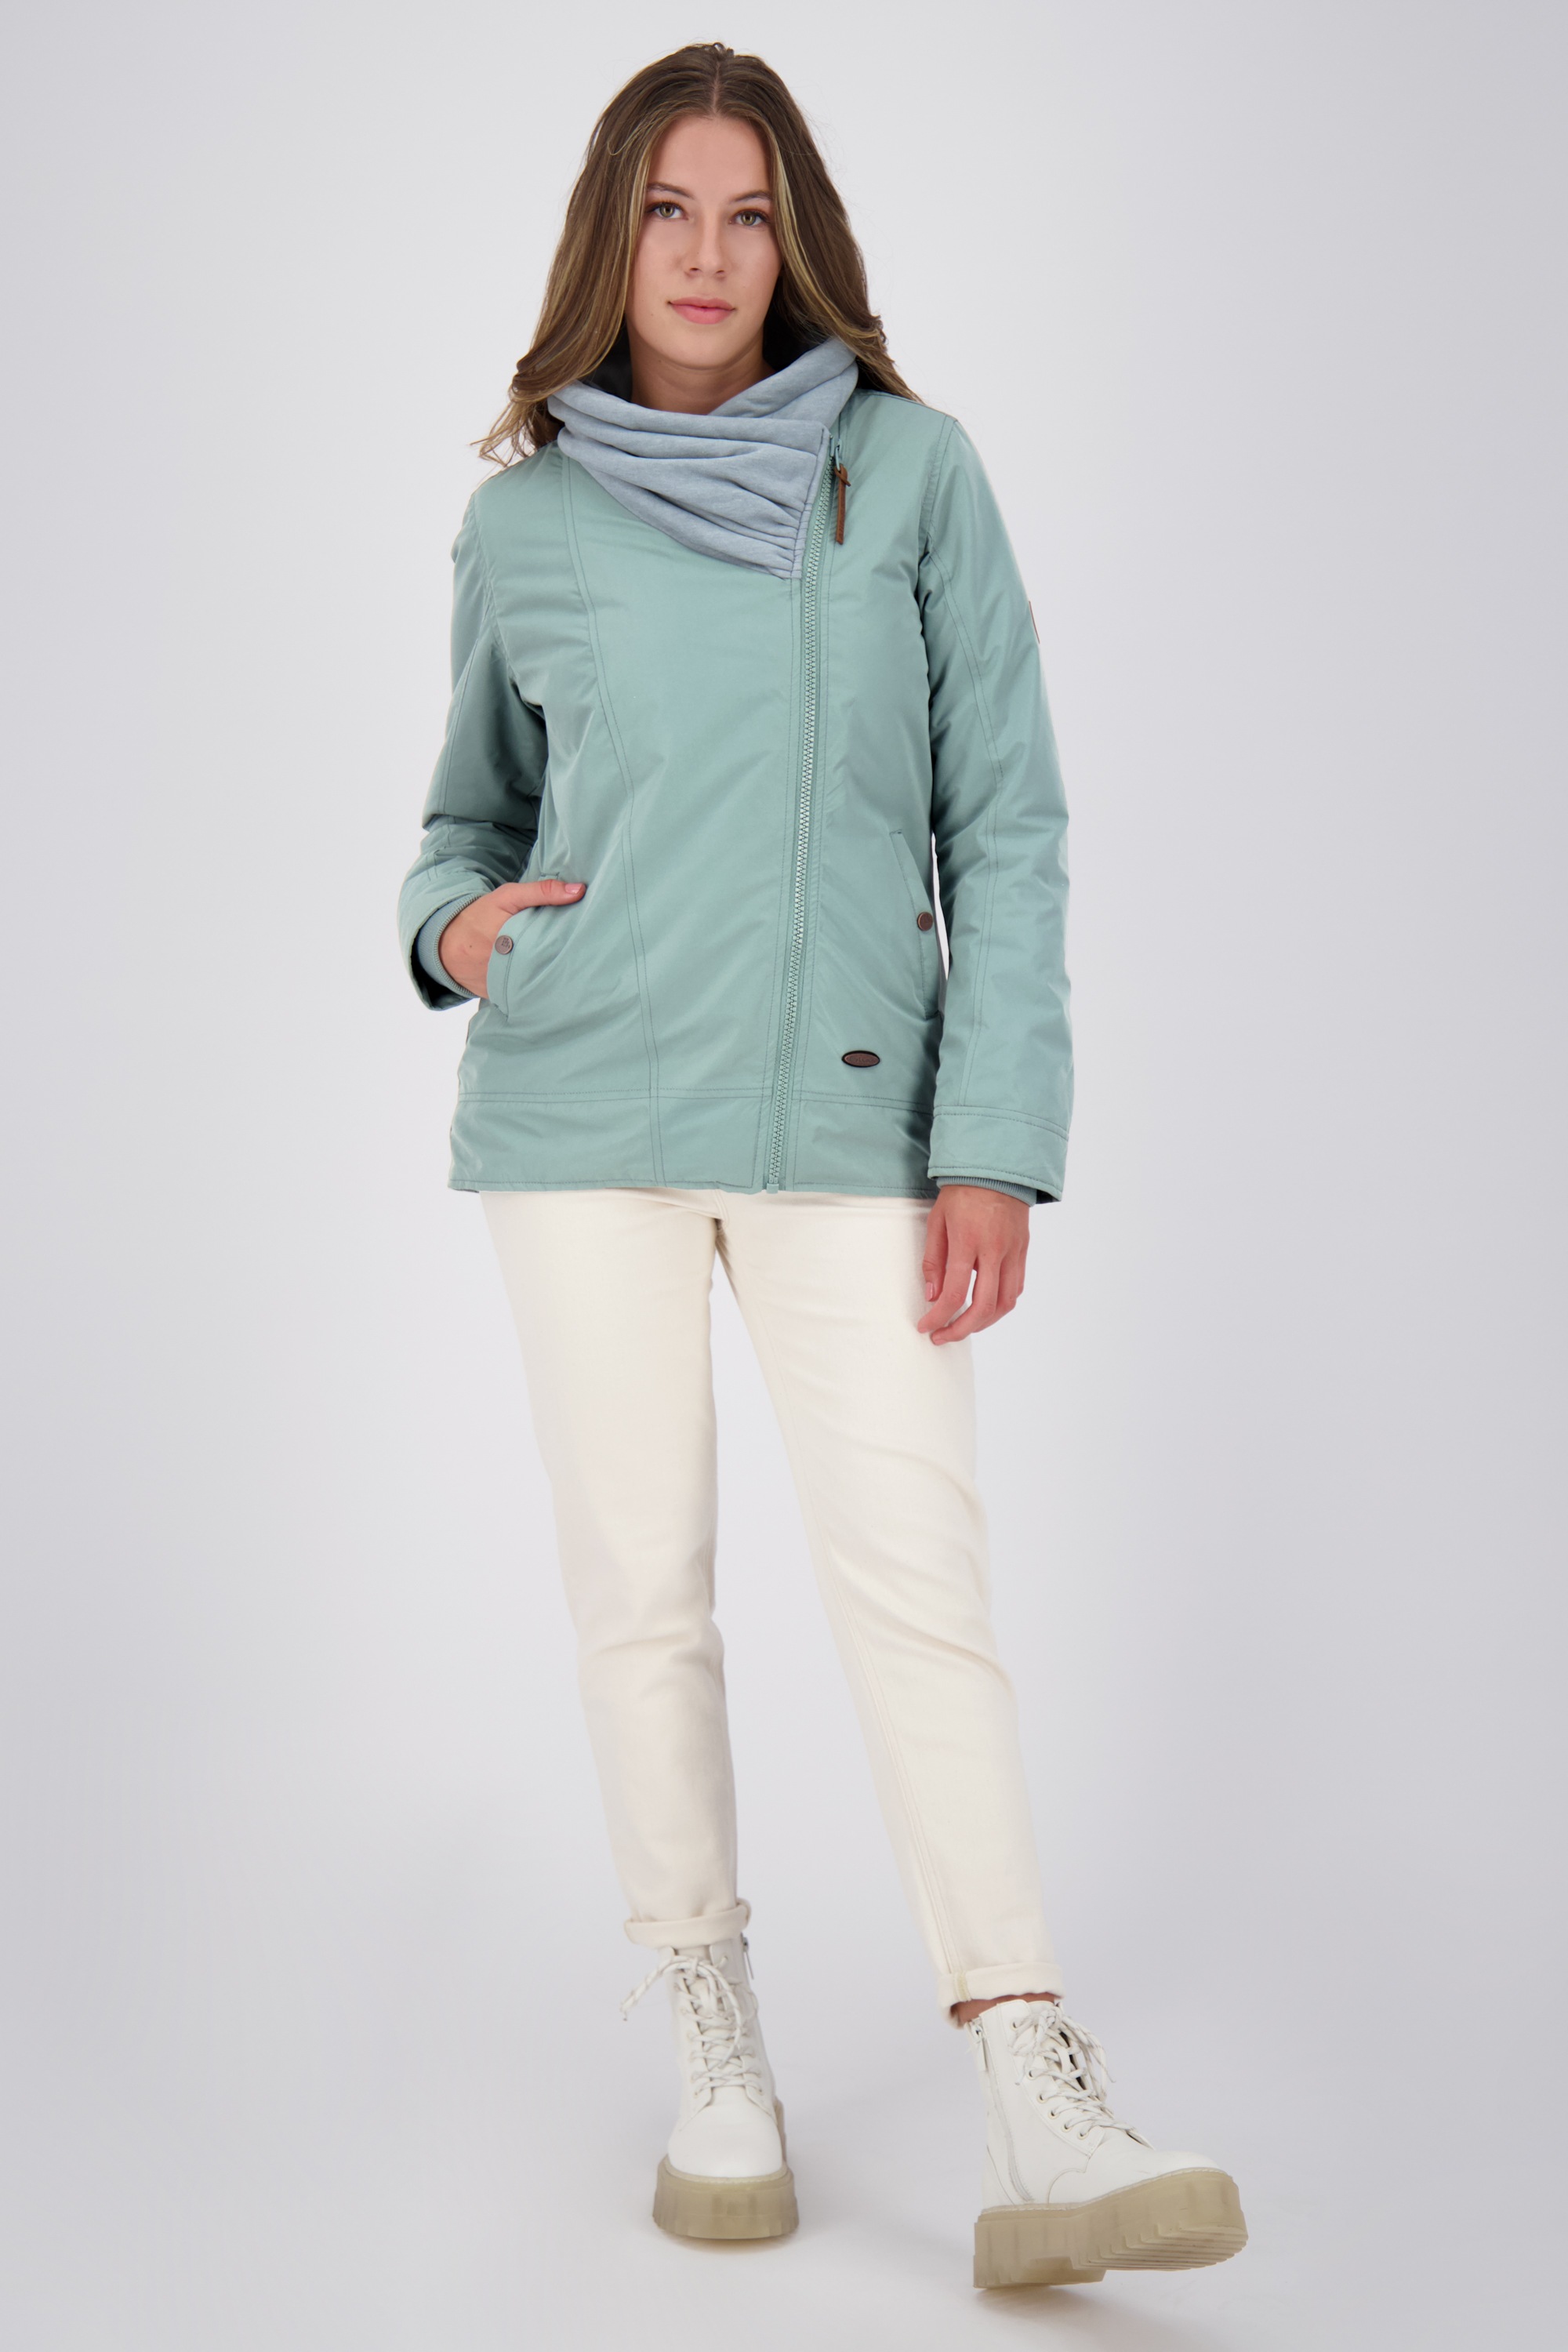 Alife & Kickin Damen gefütterte Winterjacke Jacket A kaufen Jacke« Winterjacke, »KikiAK